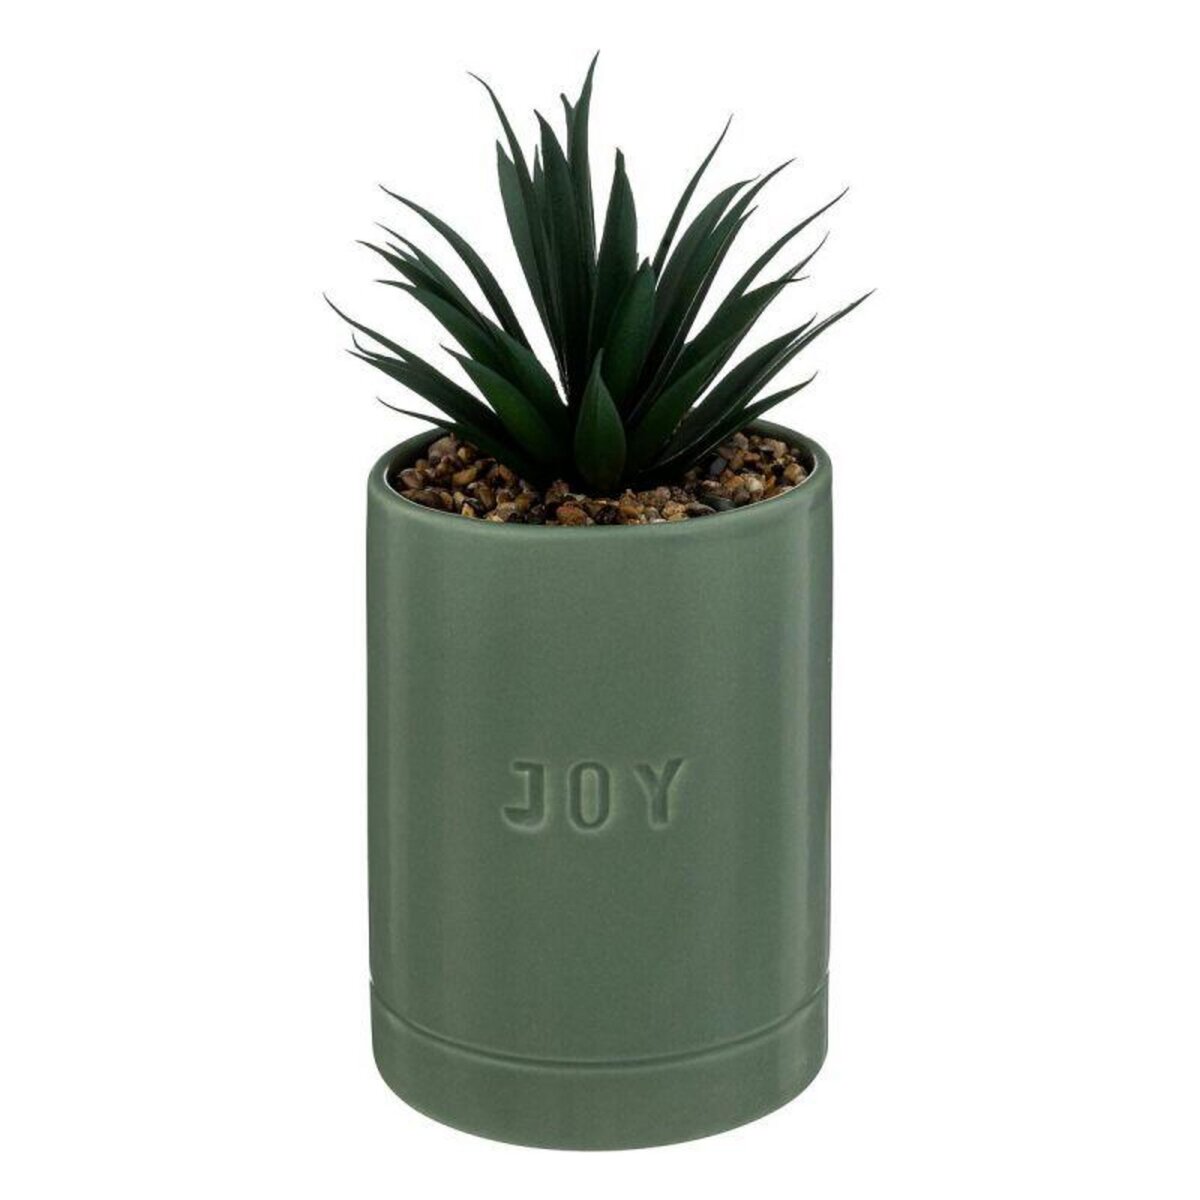  Plante Artificielle en Pot  Joy  20cm Vert